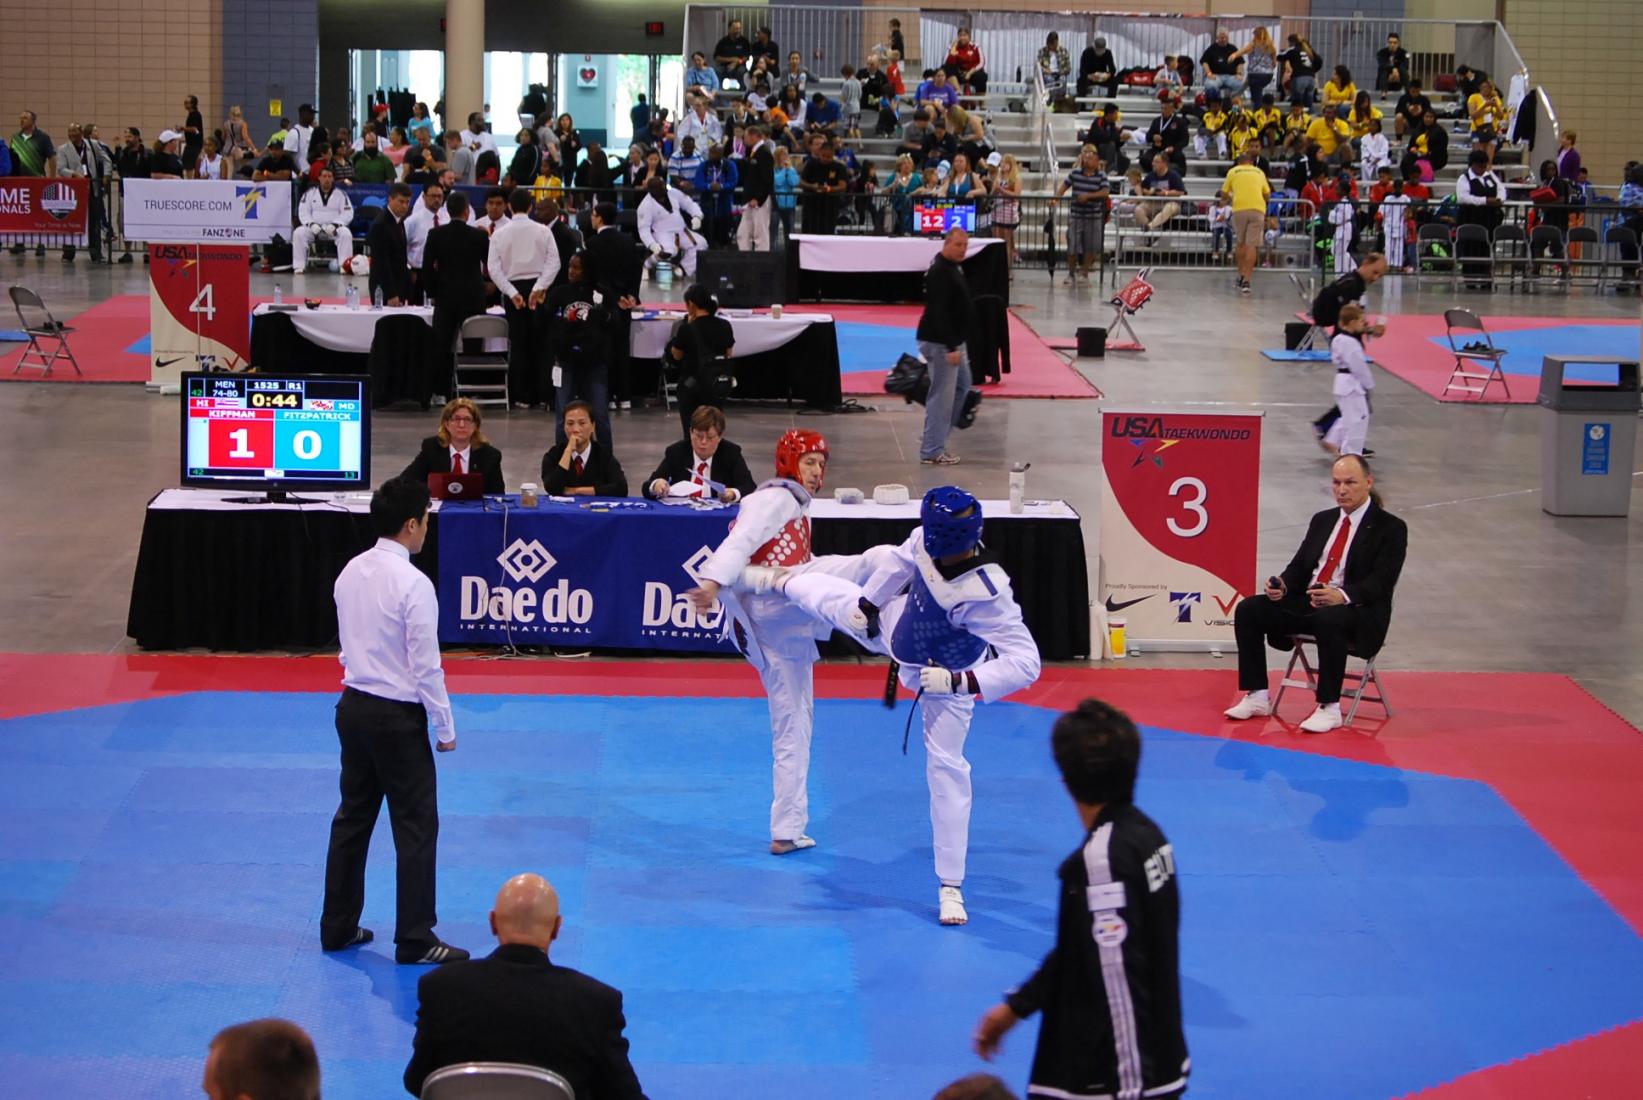 Ian Taekwondo Tournament. Photo: Tonya Fitzpatrick